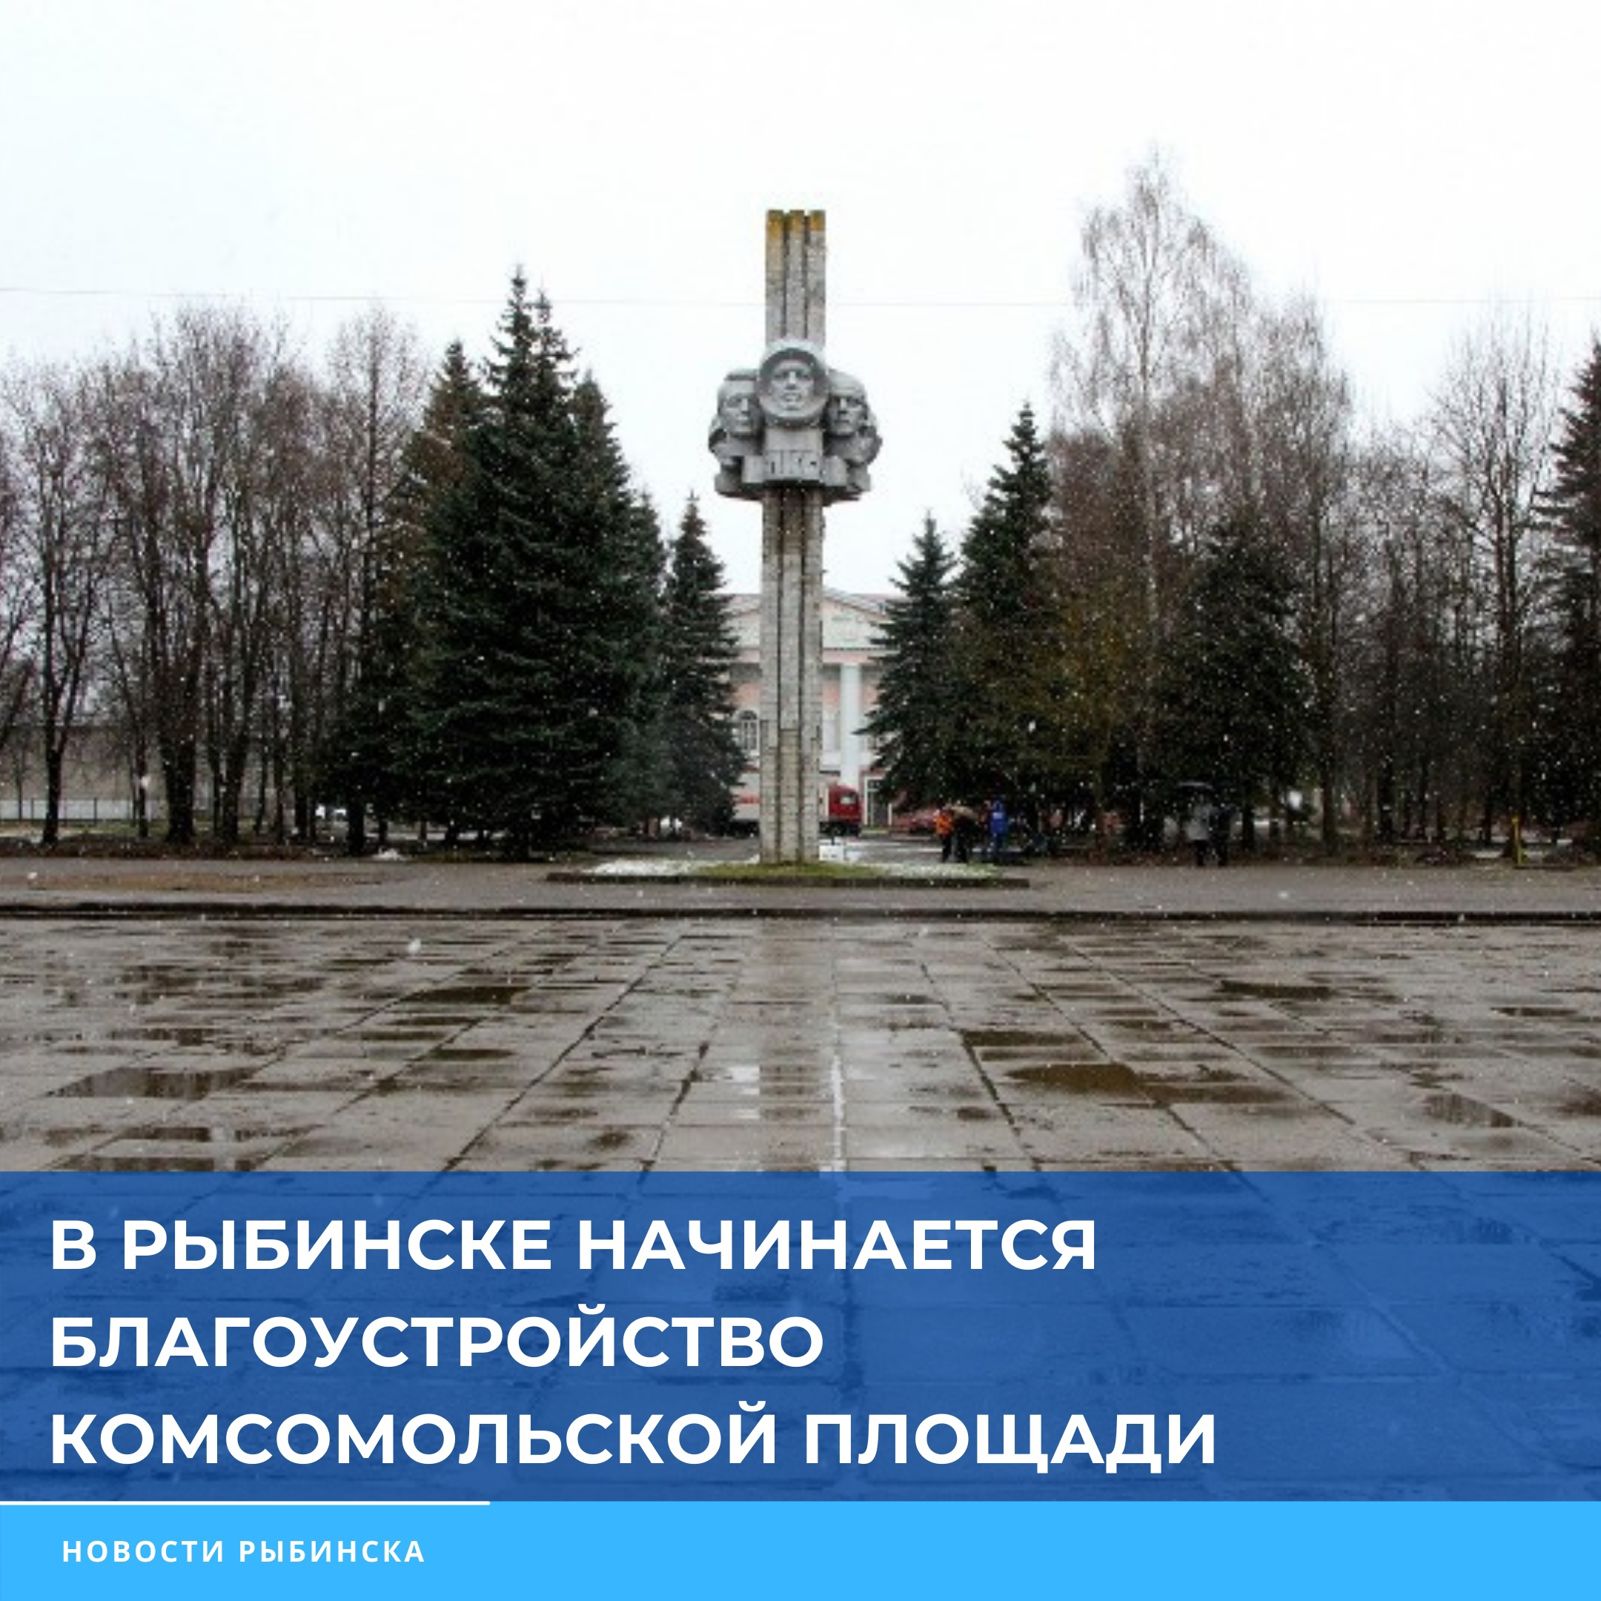 В Рыбинске стартовал ремонт Комсомольской площади